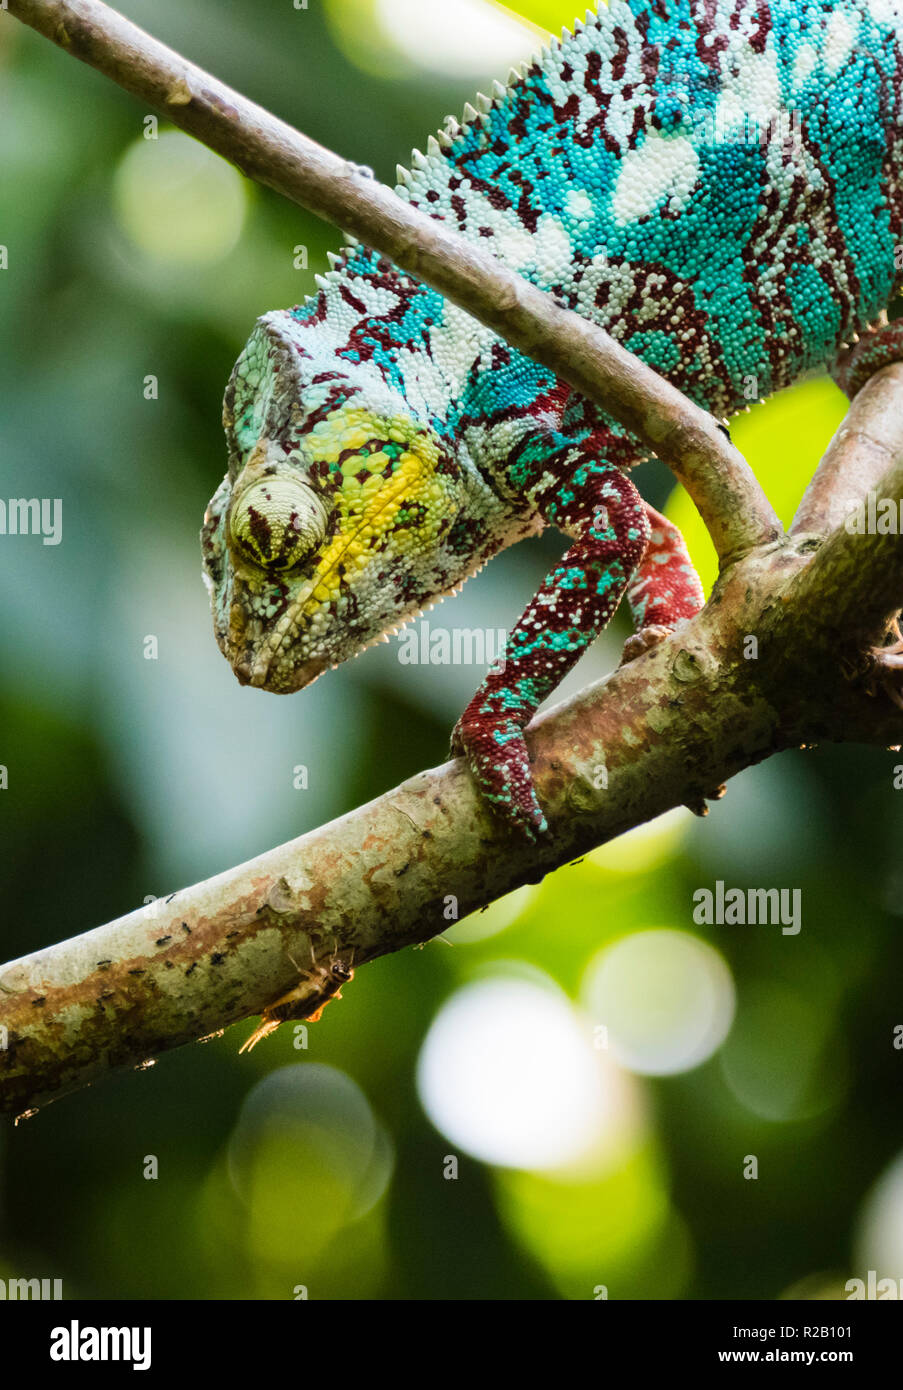 Erwachsenen männlichen Panther chameleon (Furcifer pardalis) in ihrem natürlichen Lebensraum, die Madagaskar Regenwald, lauern für Insekten zu fangen. Stockfoto